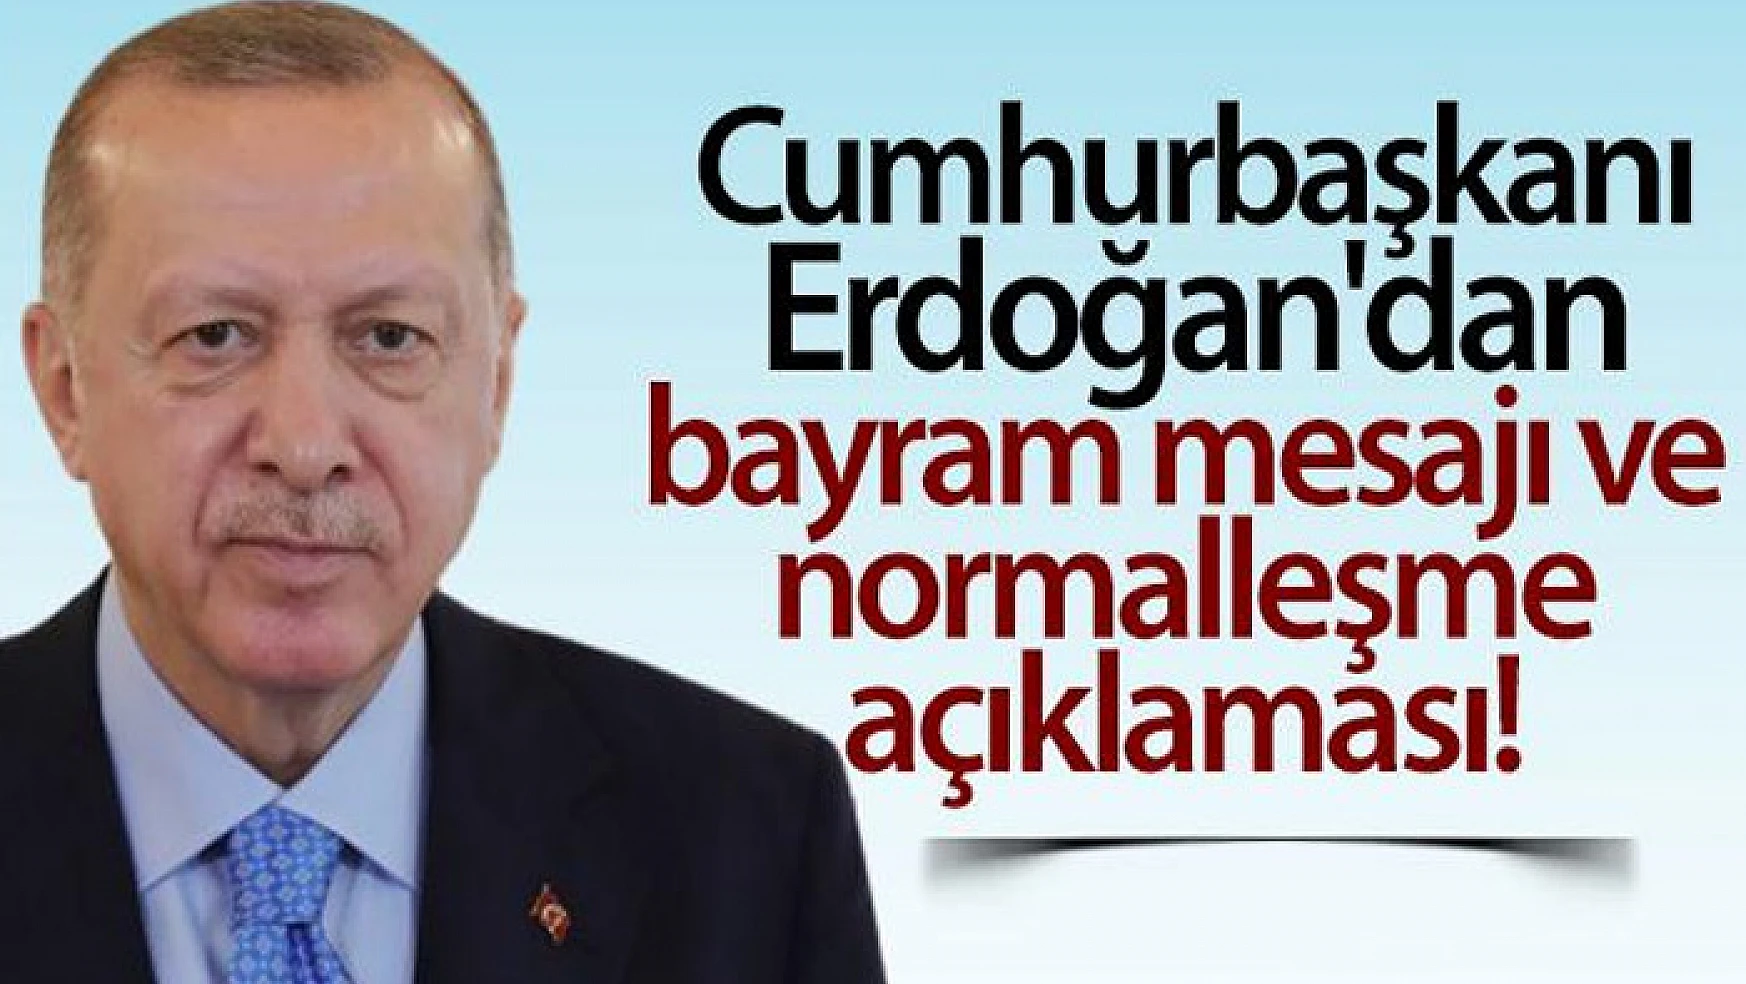 Cumhurbaşkanı Erdoğan'dan bayram mesajı ve normalleşme açıklaması!